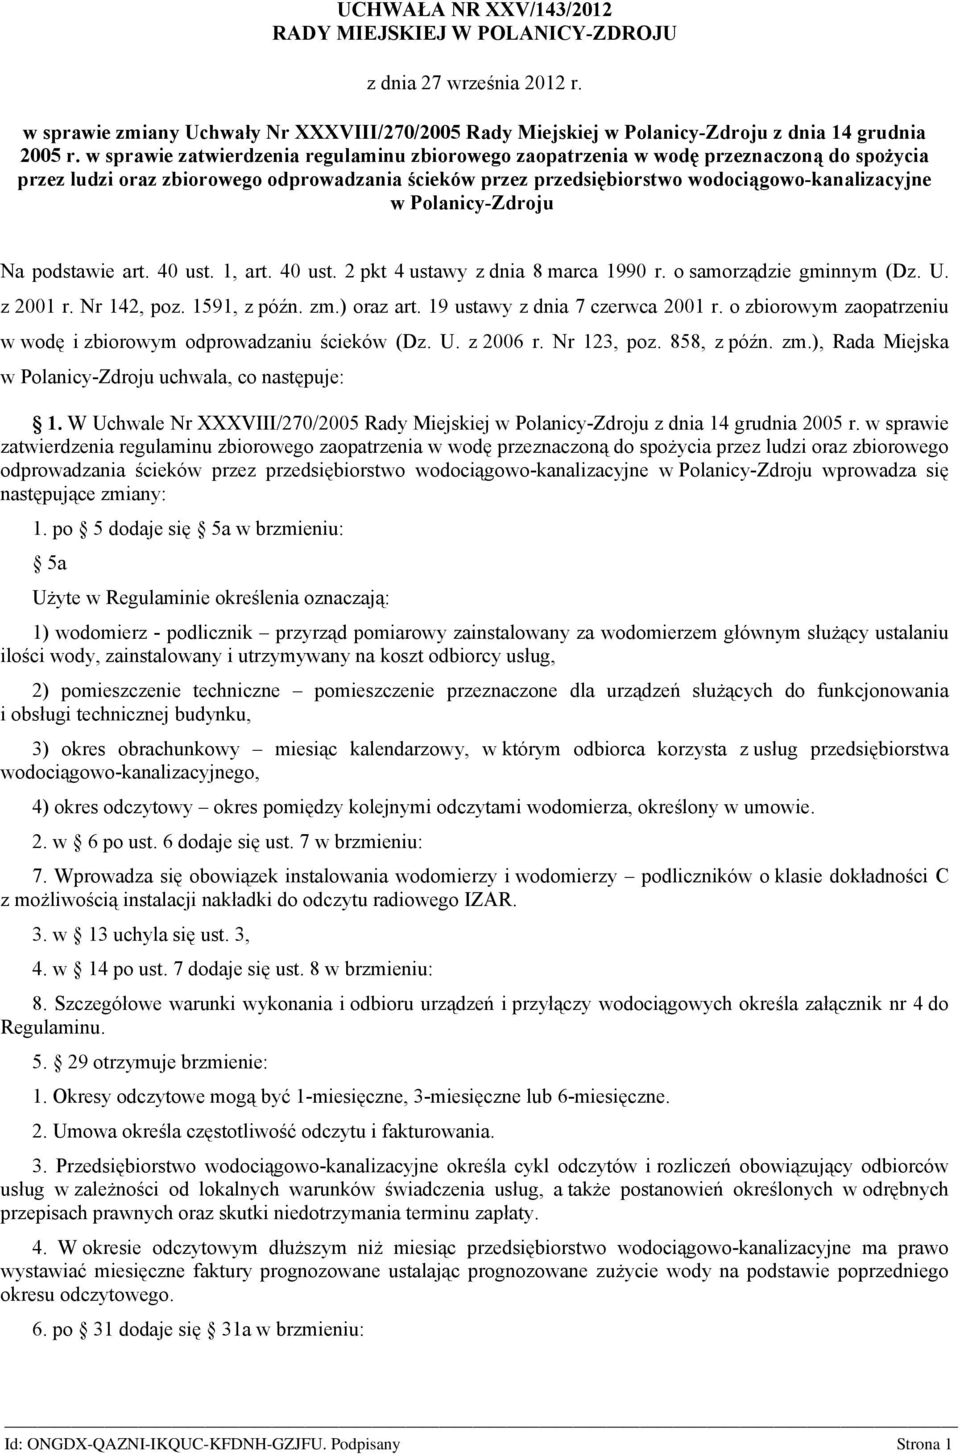 Polanicy-Zdroju Na podstawie art. 40 ust. 1, art. 40 ust. 2 pkt 4 ustawy z dnia 8 marca 1990 r. o samorządzie gminnym (Dz. U. z 2001 r. Nr 142, poz. 1591, z późn. zm.) oraz art.